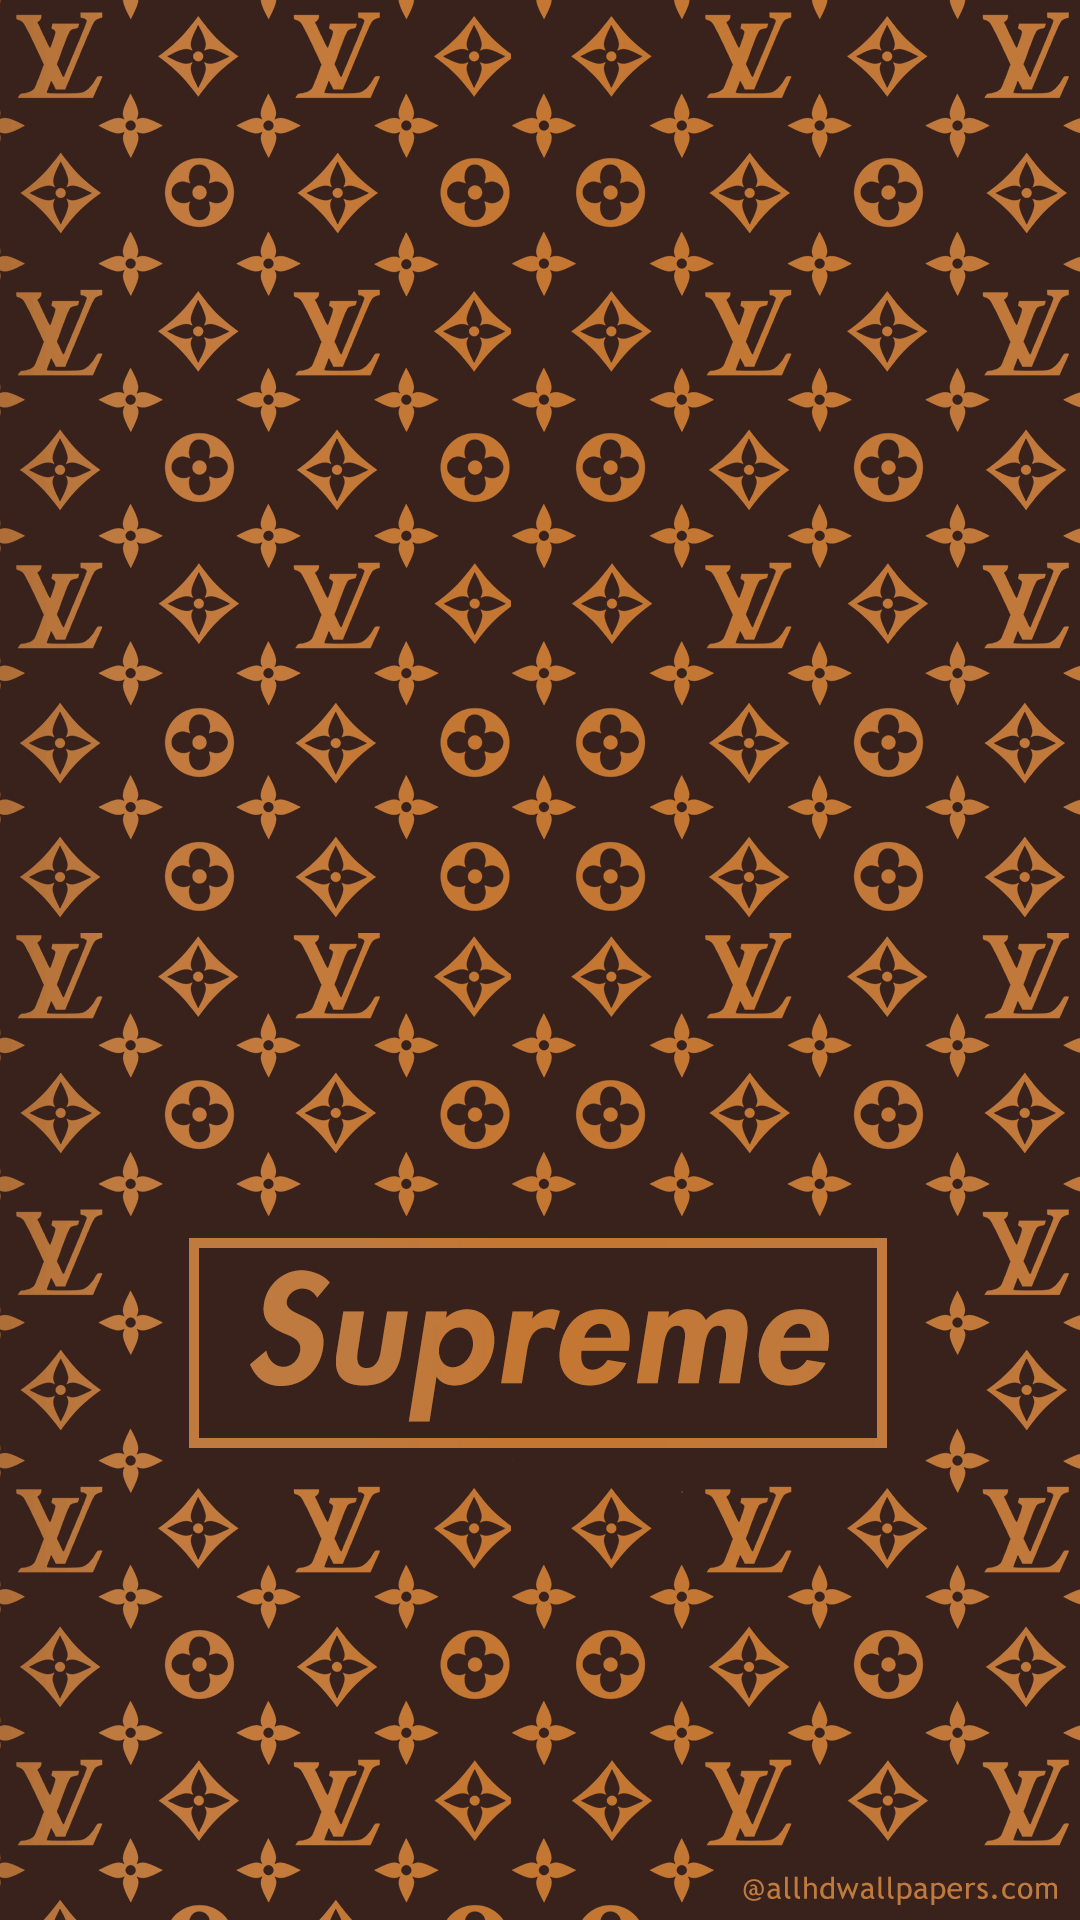 Lil Pump Supreme Louis Vuitton  Supreme wallpaper, Supreme iphone wallpaper,  Lil pump